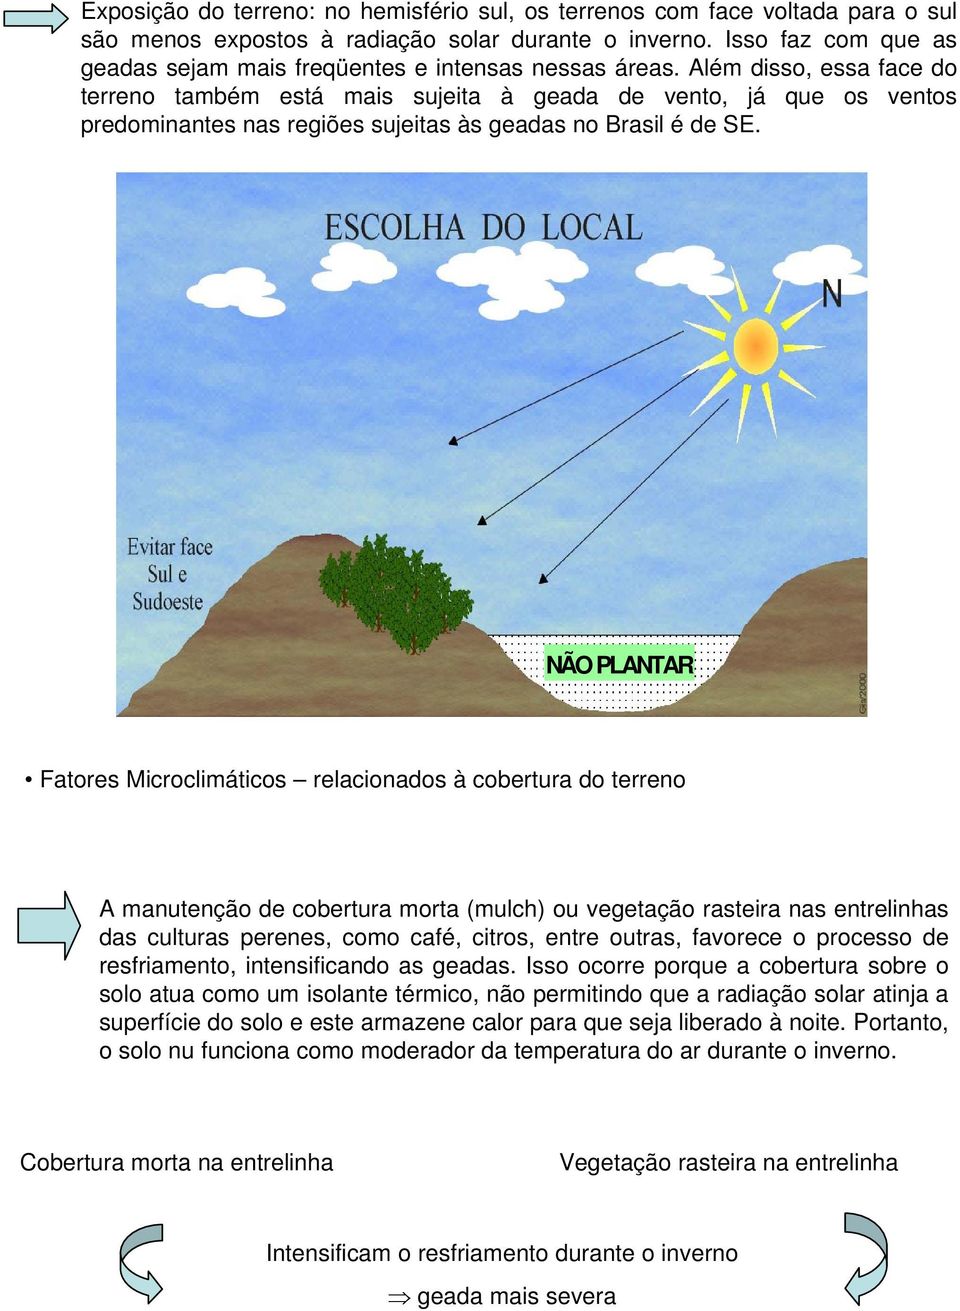 Além disso, essa face do terreno também está mais sujeita à geada de vento, já que os ventos predominantes nas regiões sujeitas às geadas no Brasil é de SE.